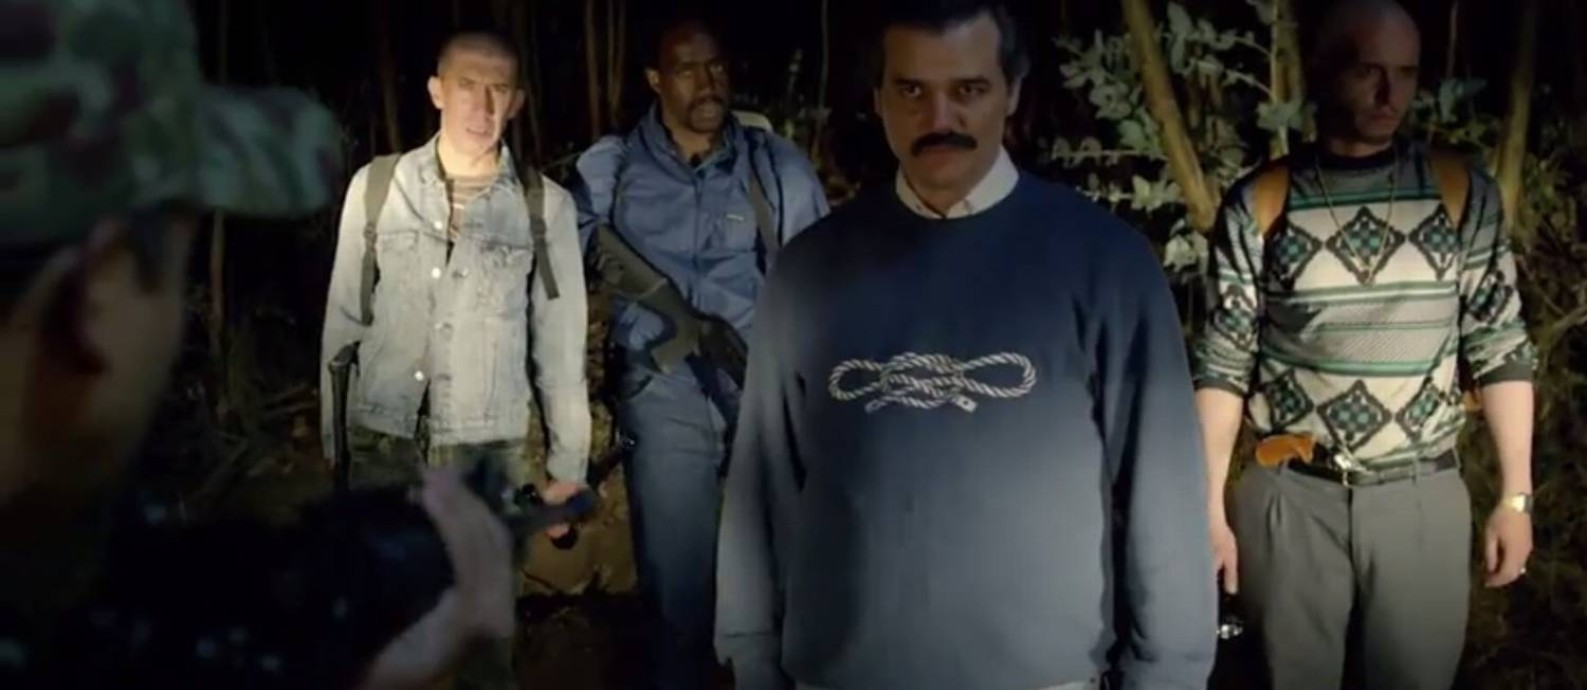 Pablo Escobar (Wagner Moura) escapa da prisão Foto: Reprodução